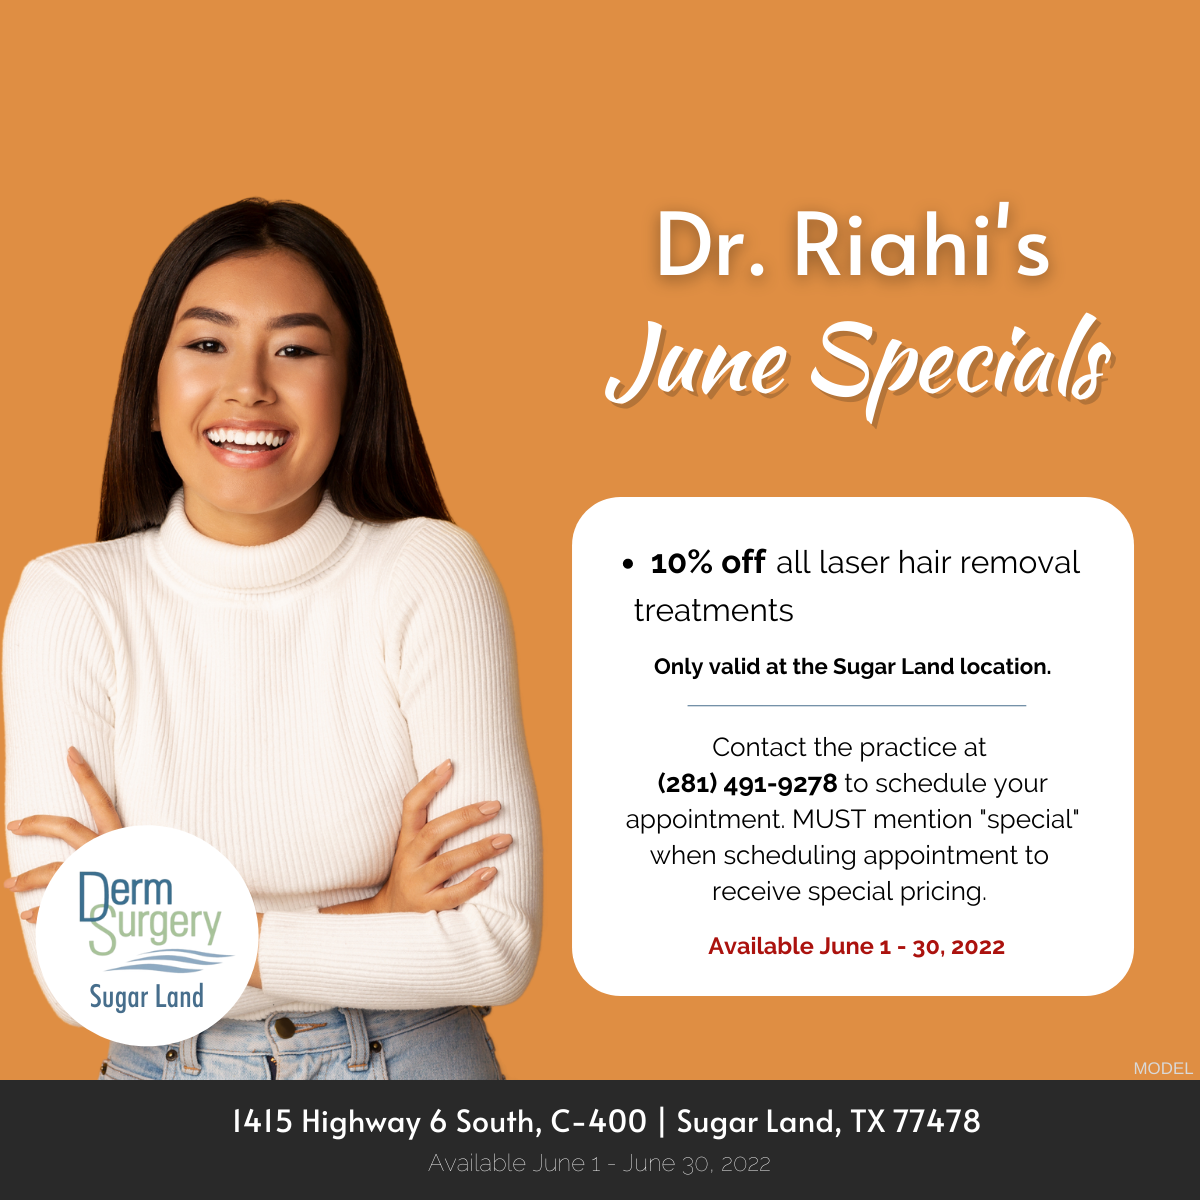 Dr. Riahi's June Specials 2022